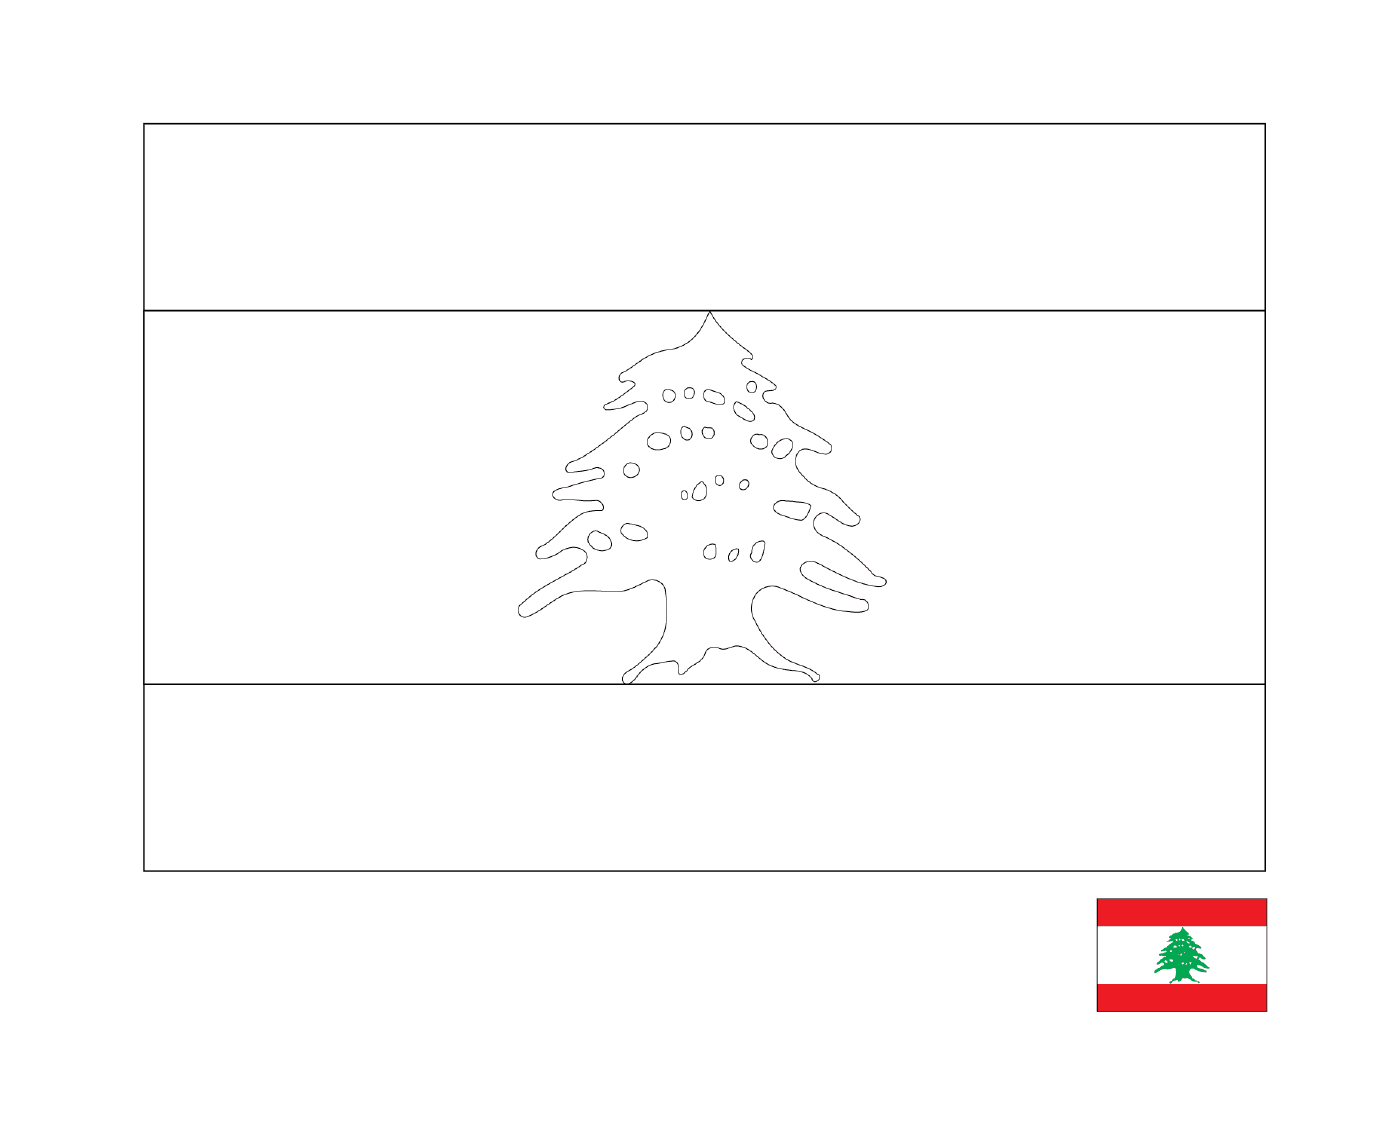  लेबनान का झंडा 